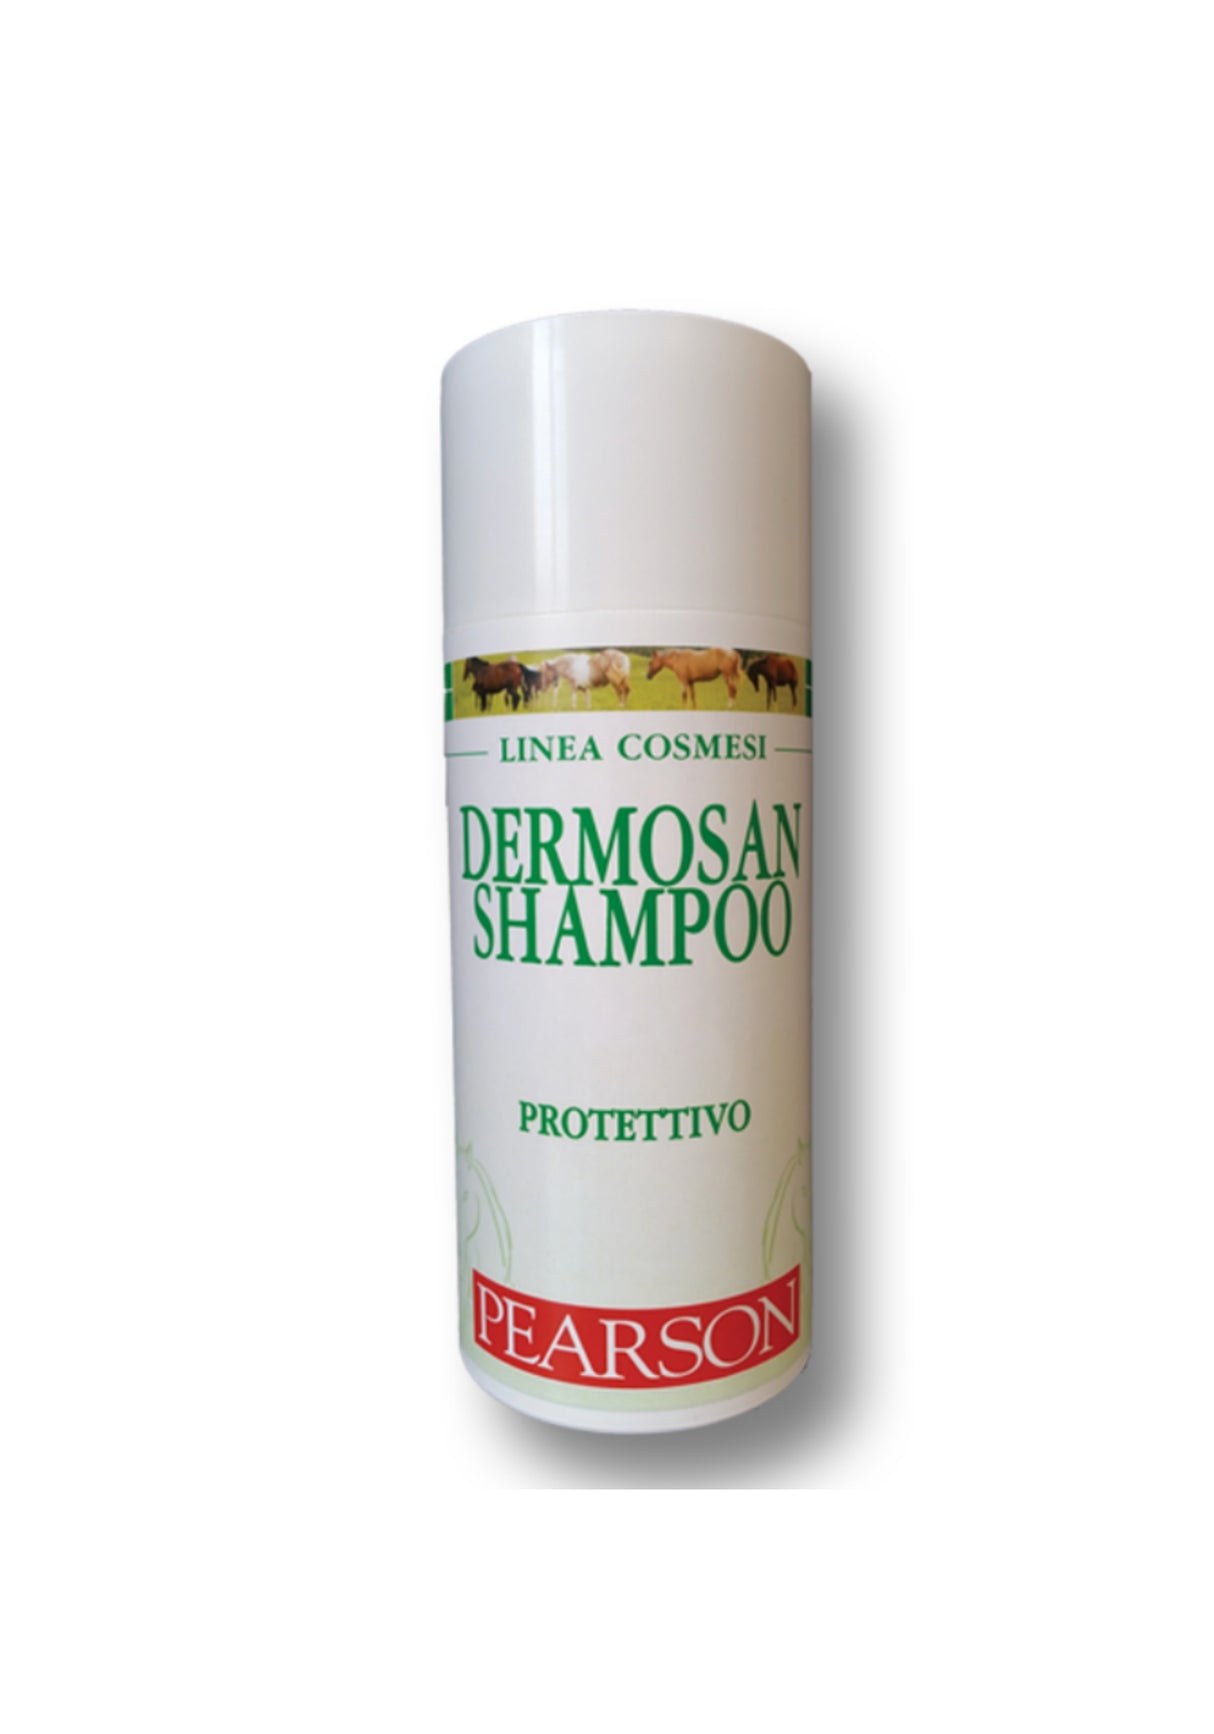 Shampoo protettivo DERMOSAN Pearson 500 ml